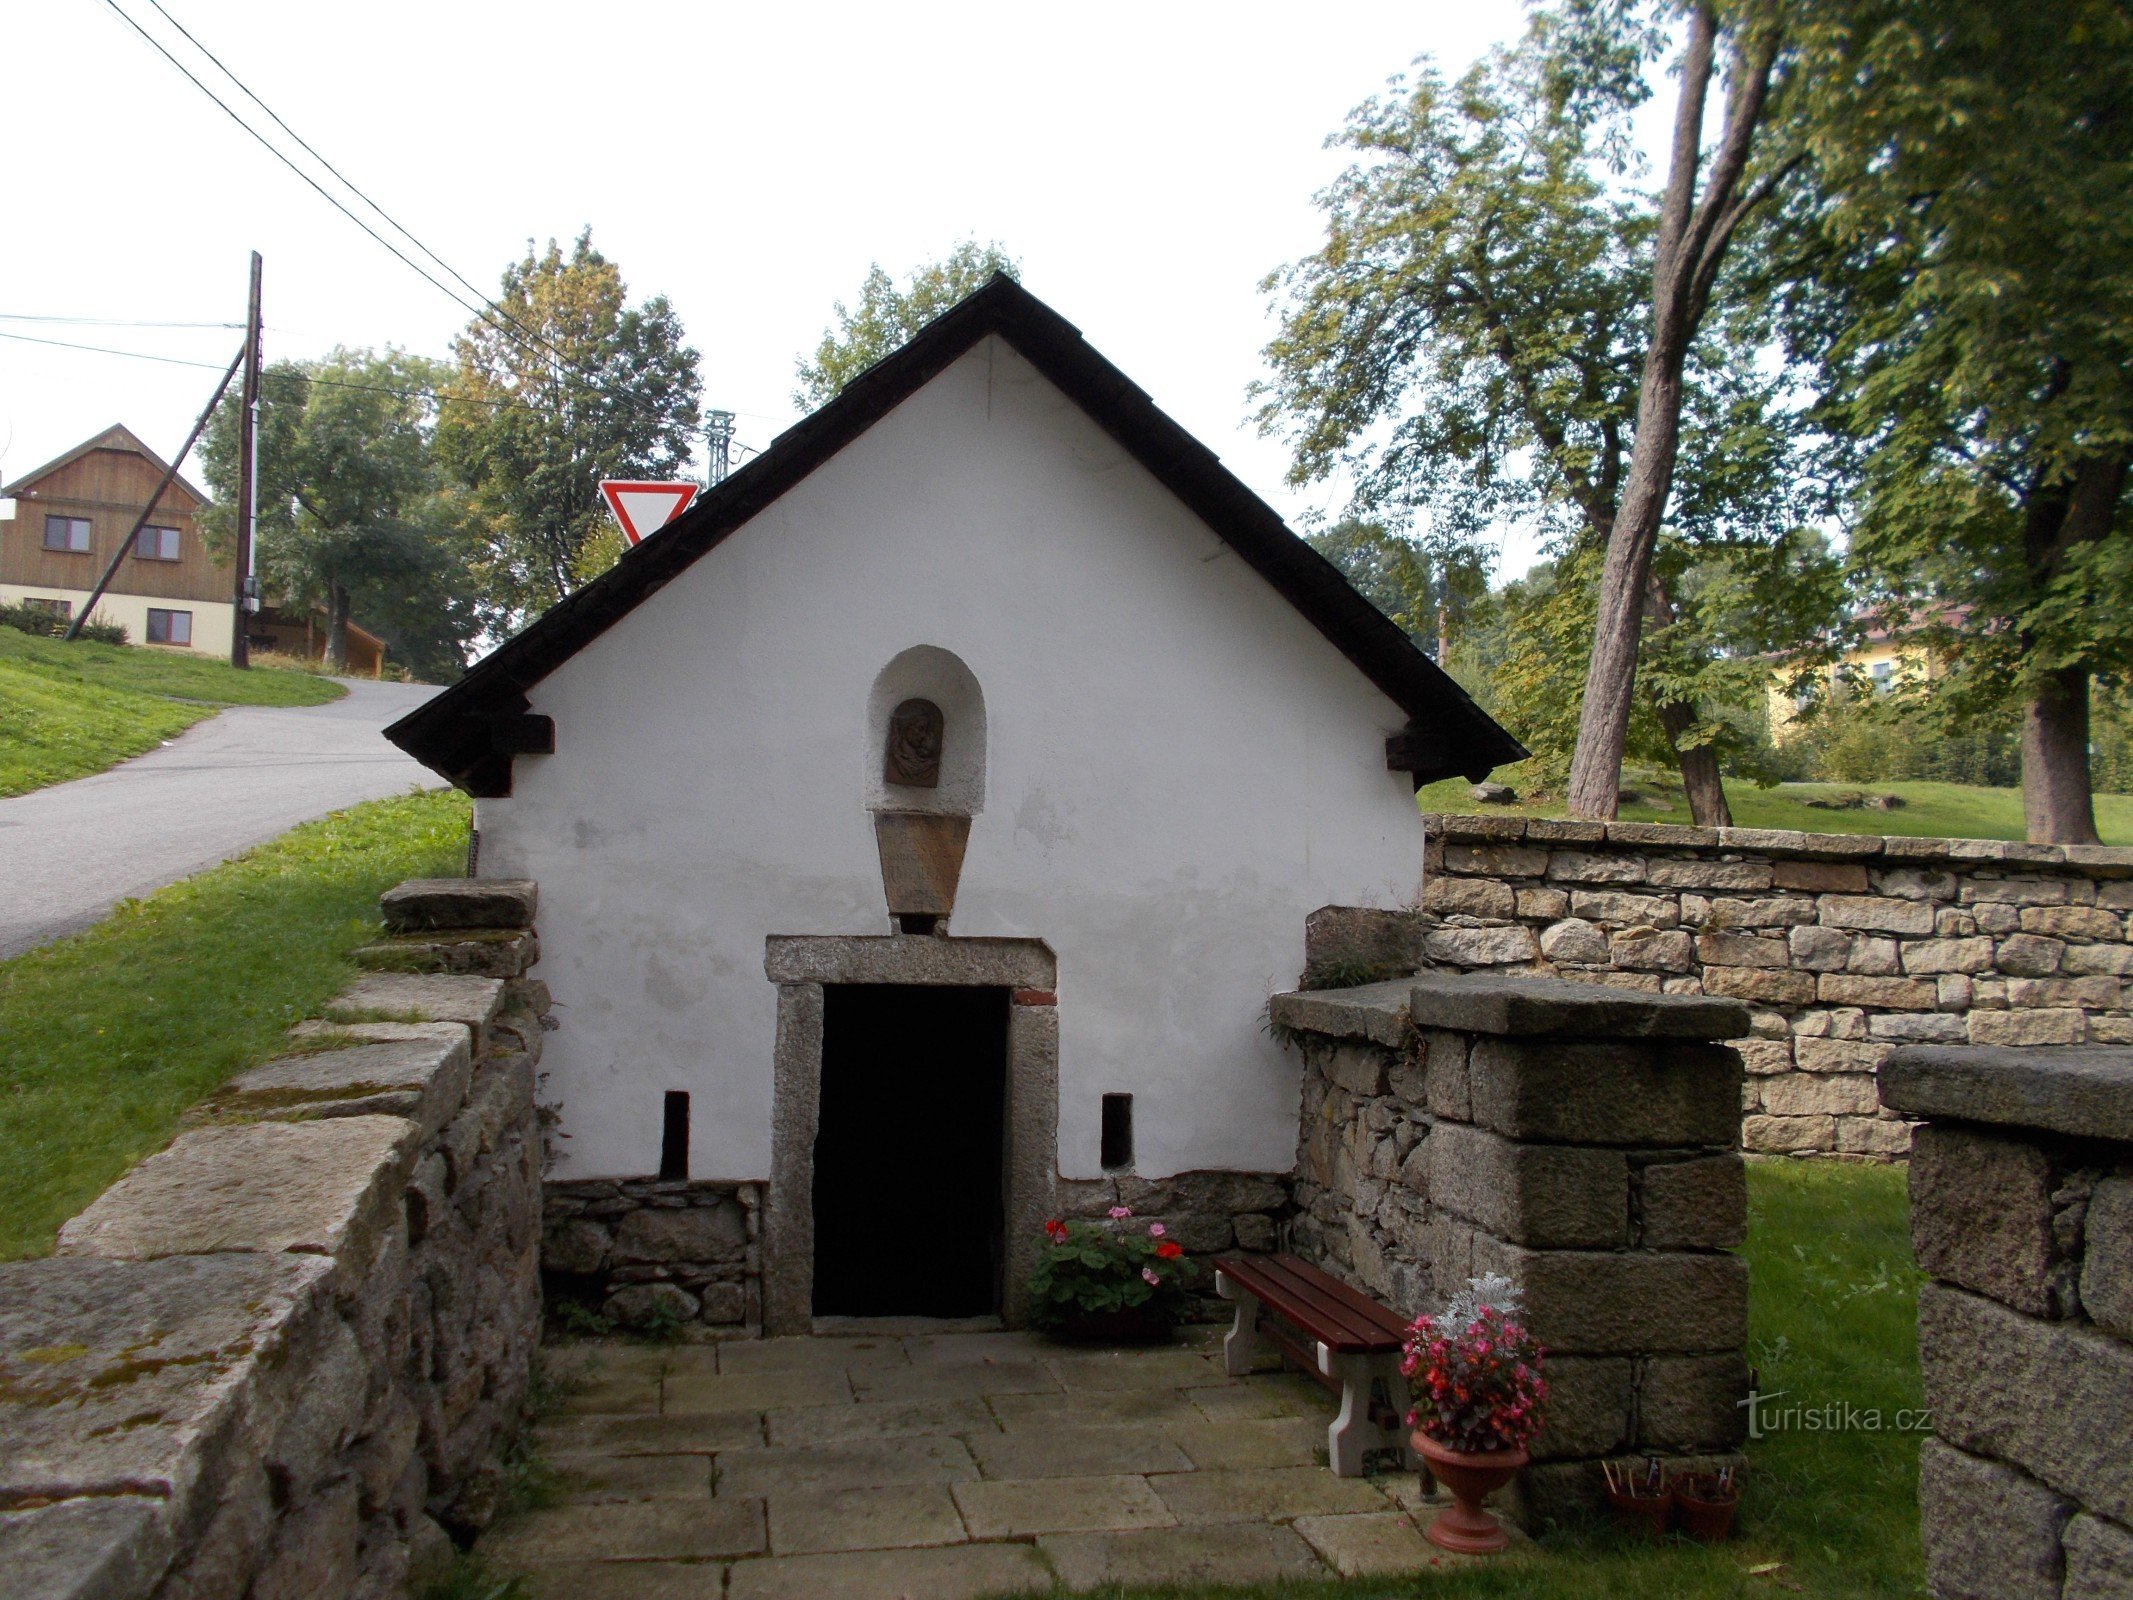 Well near the church in Krásná